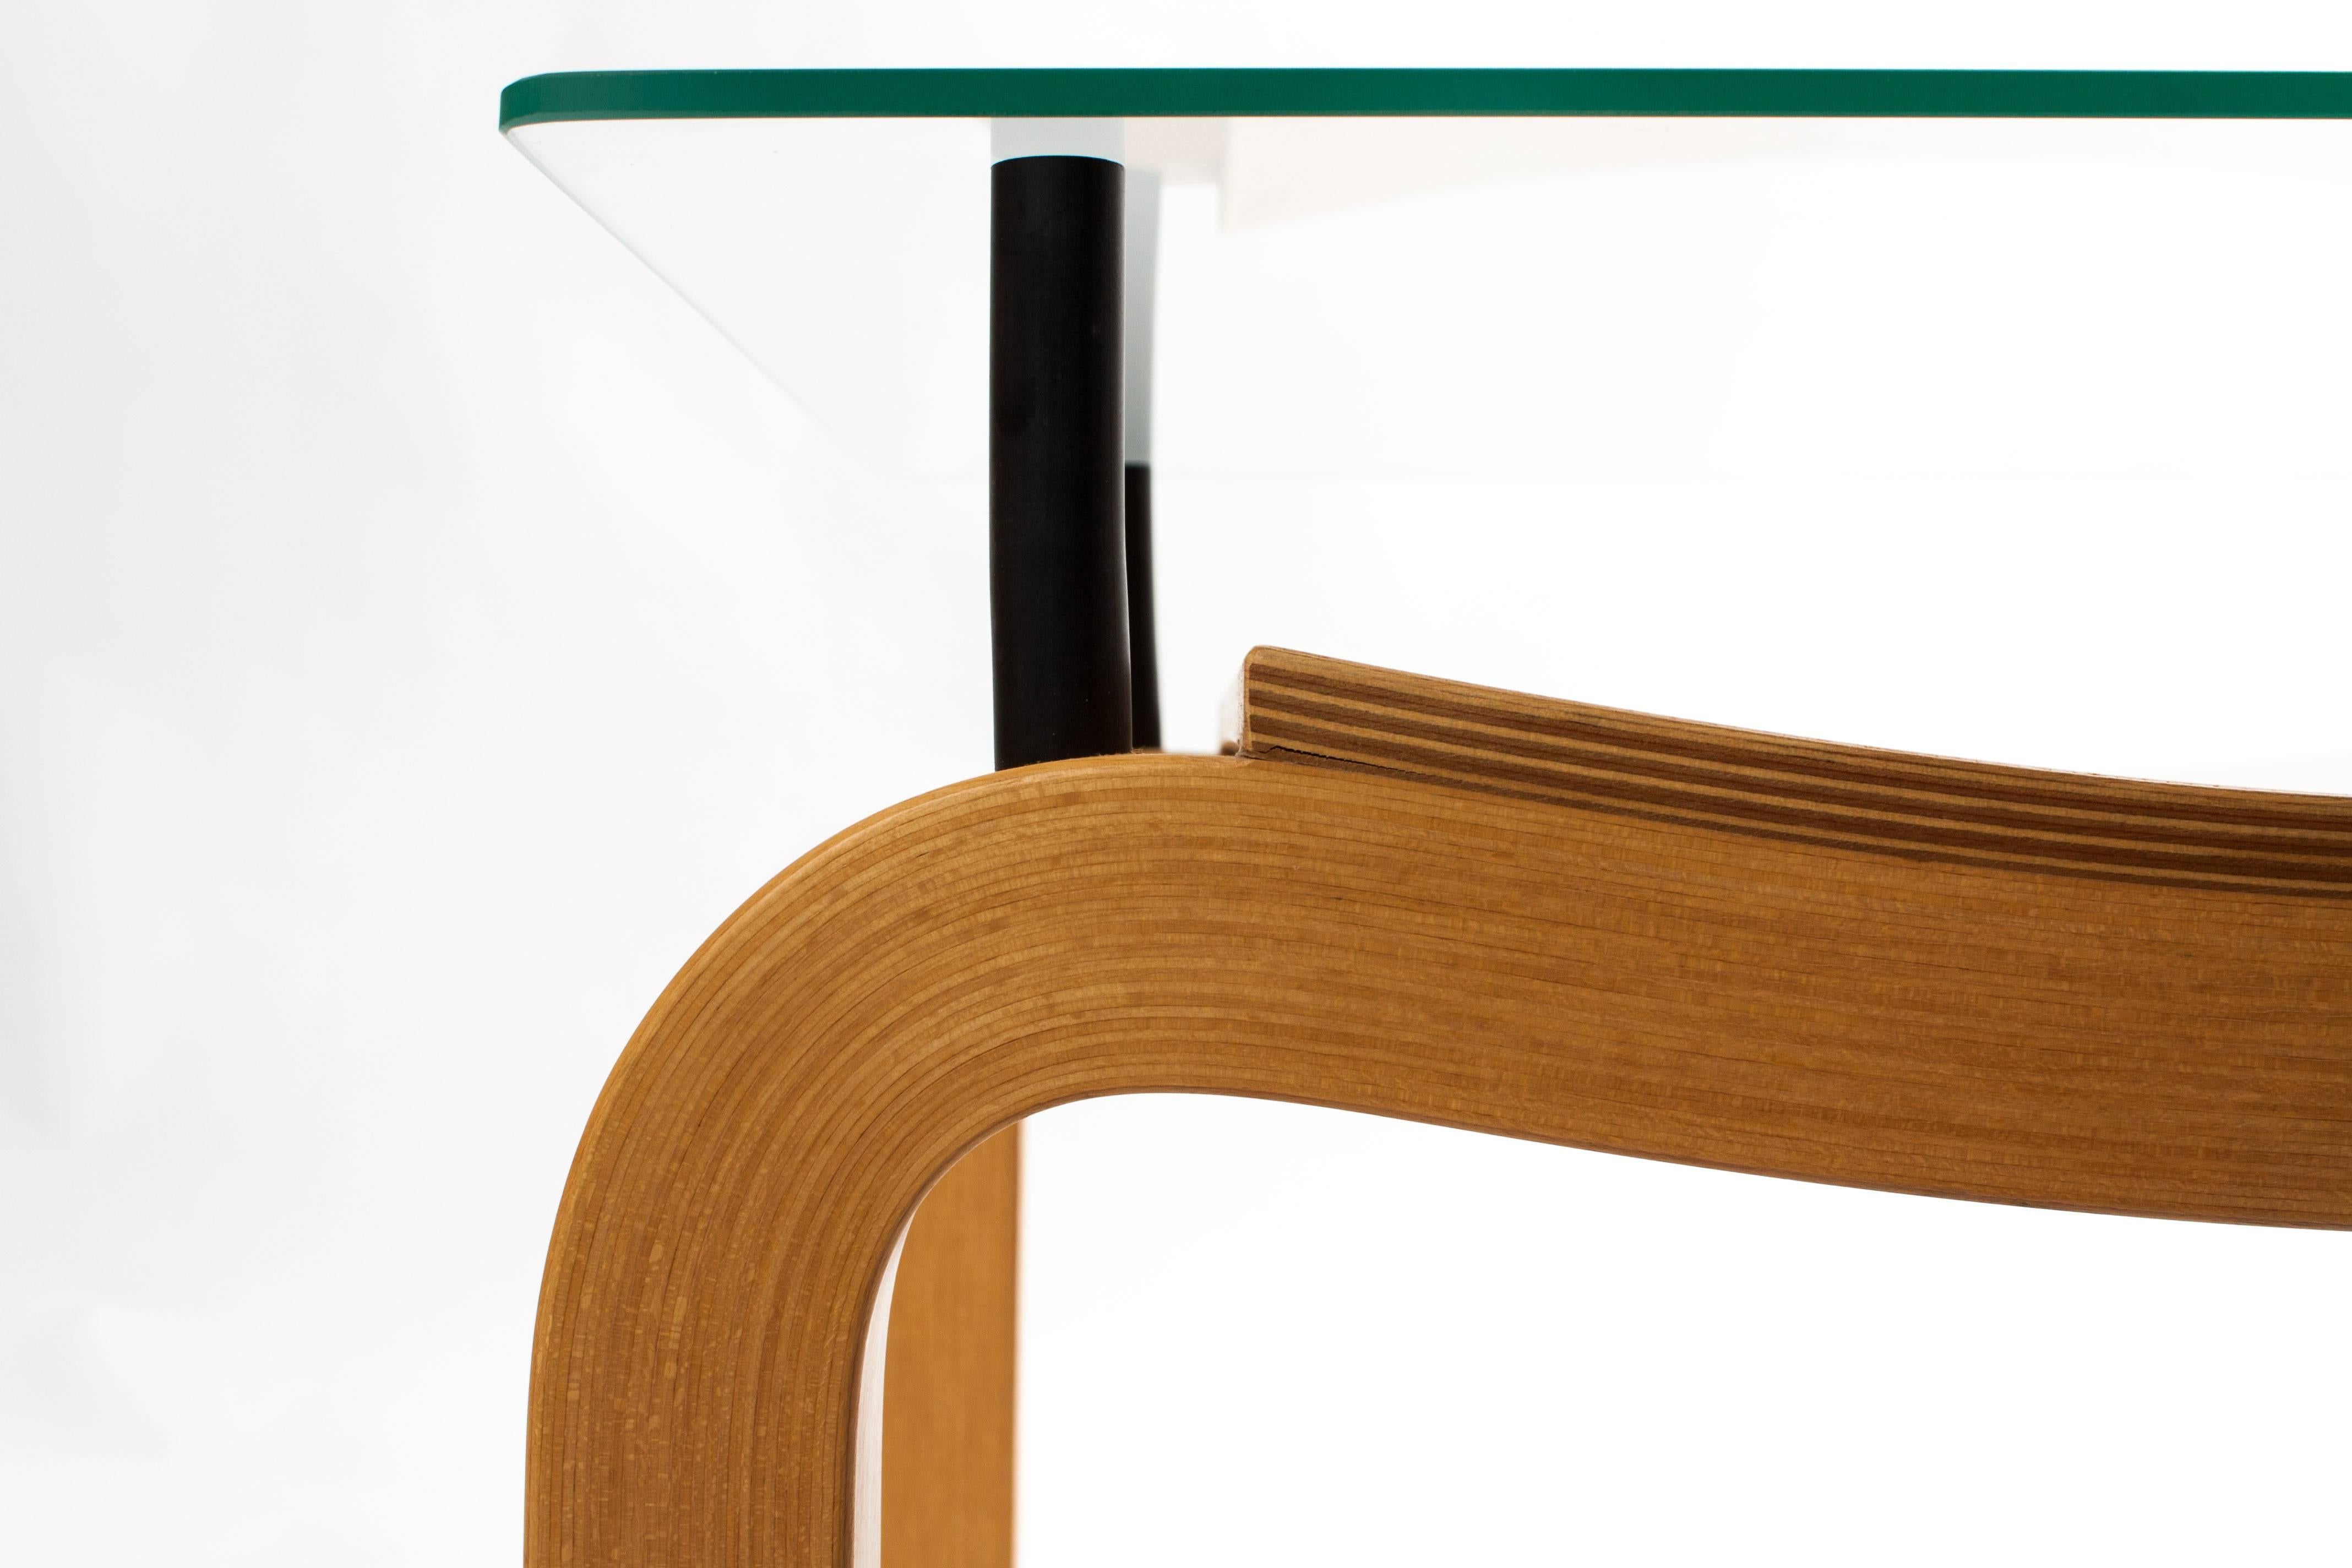 Ruud Jan Kokke Bended Wood Tables Japanese Style 1